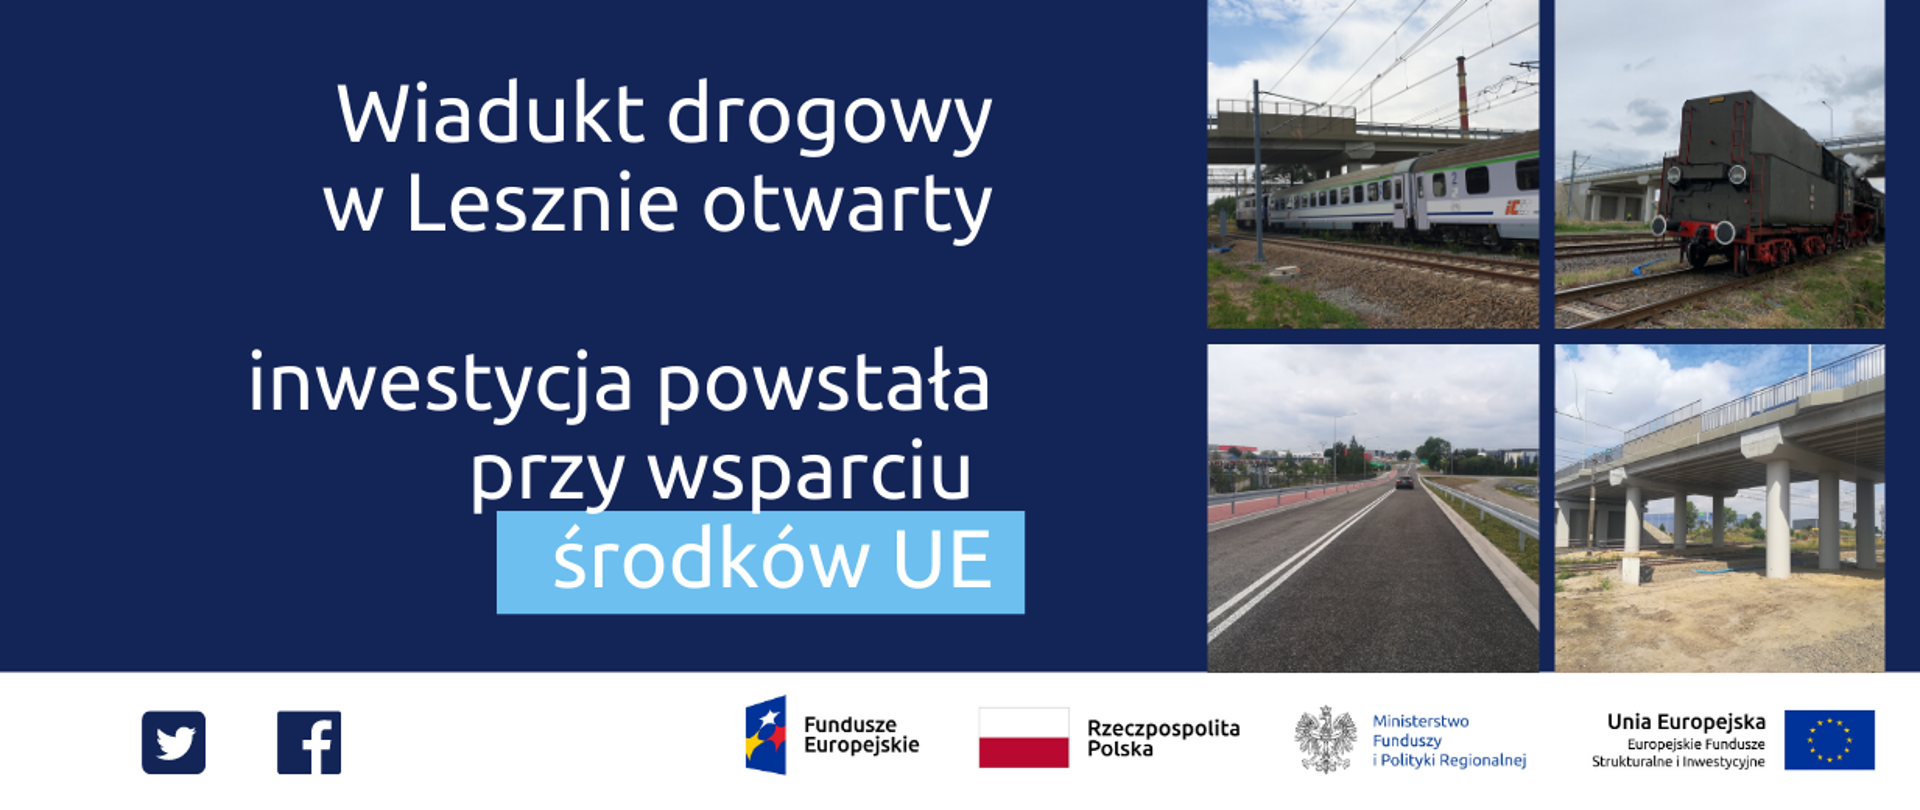 Napis: Wiadukt drogowy w Lesznie otwarty Inwestycja powstała przy wsparciu środków UE. Obok 4 zdjęcia obiektu